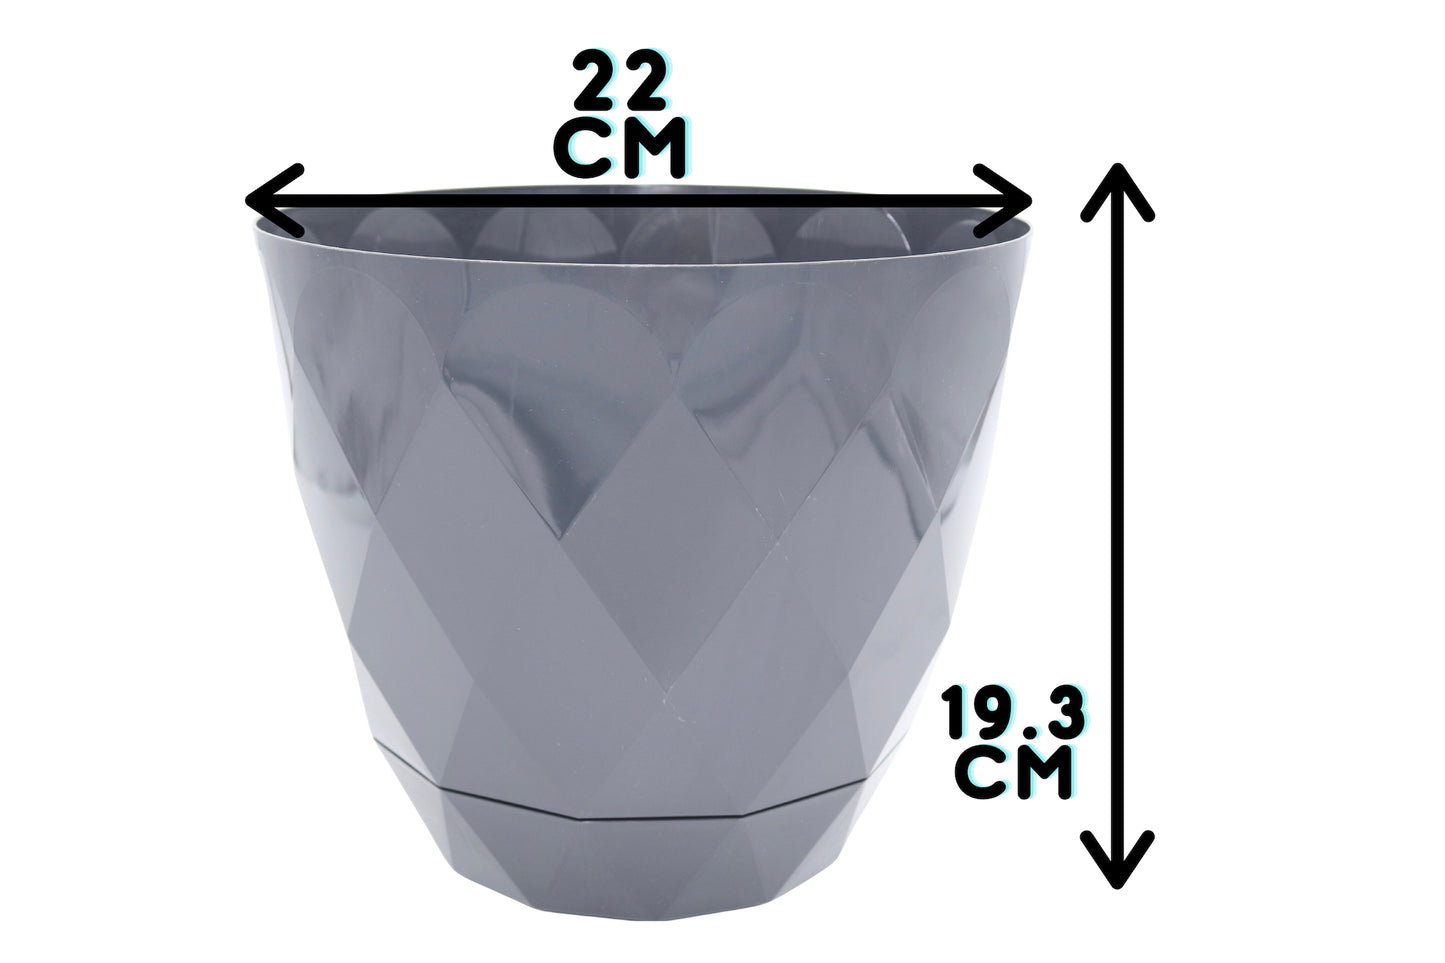 22cm graphite plant pot measurements